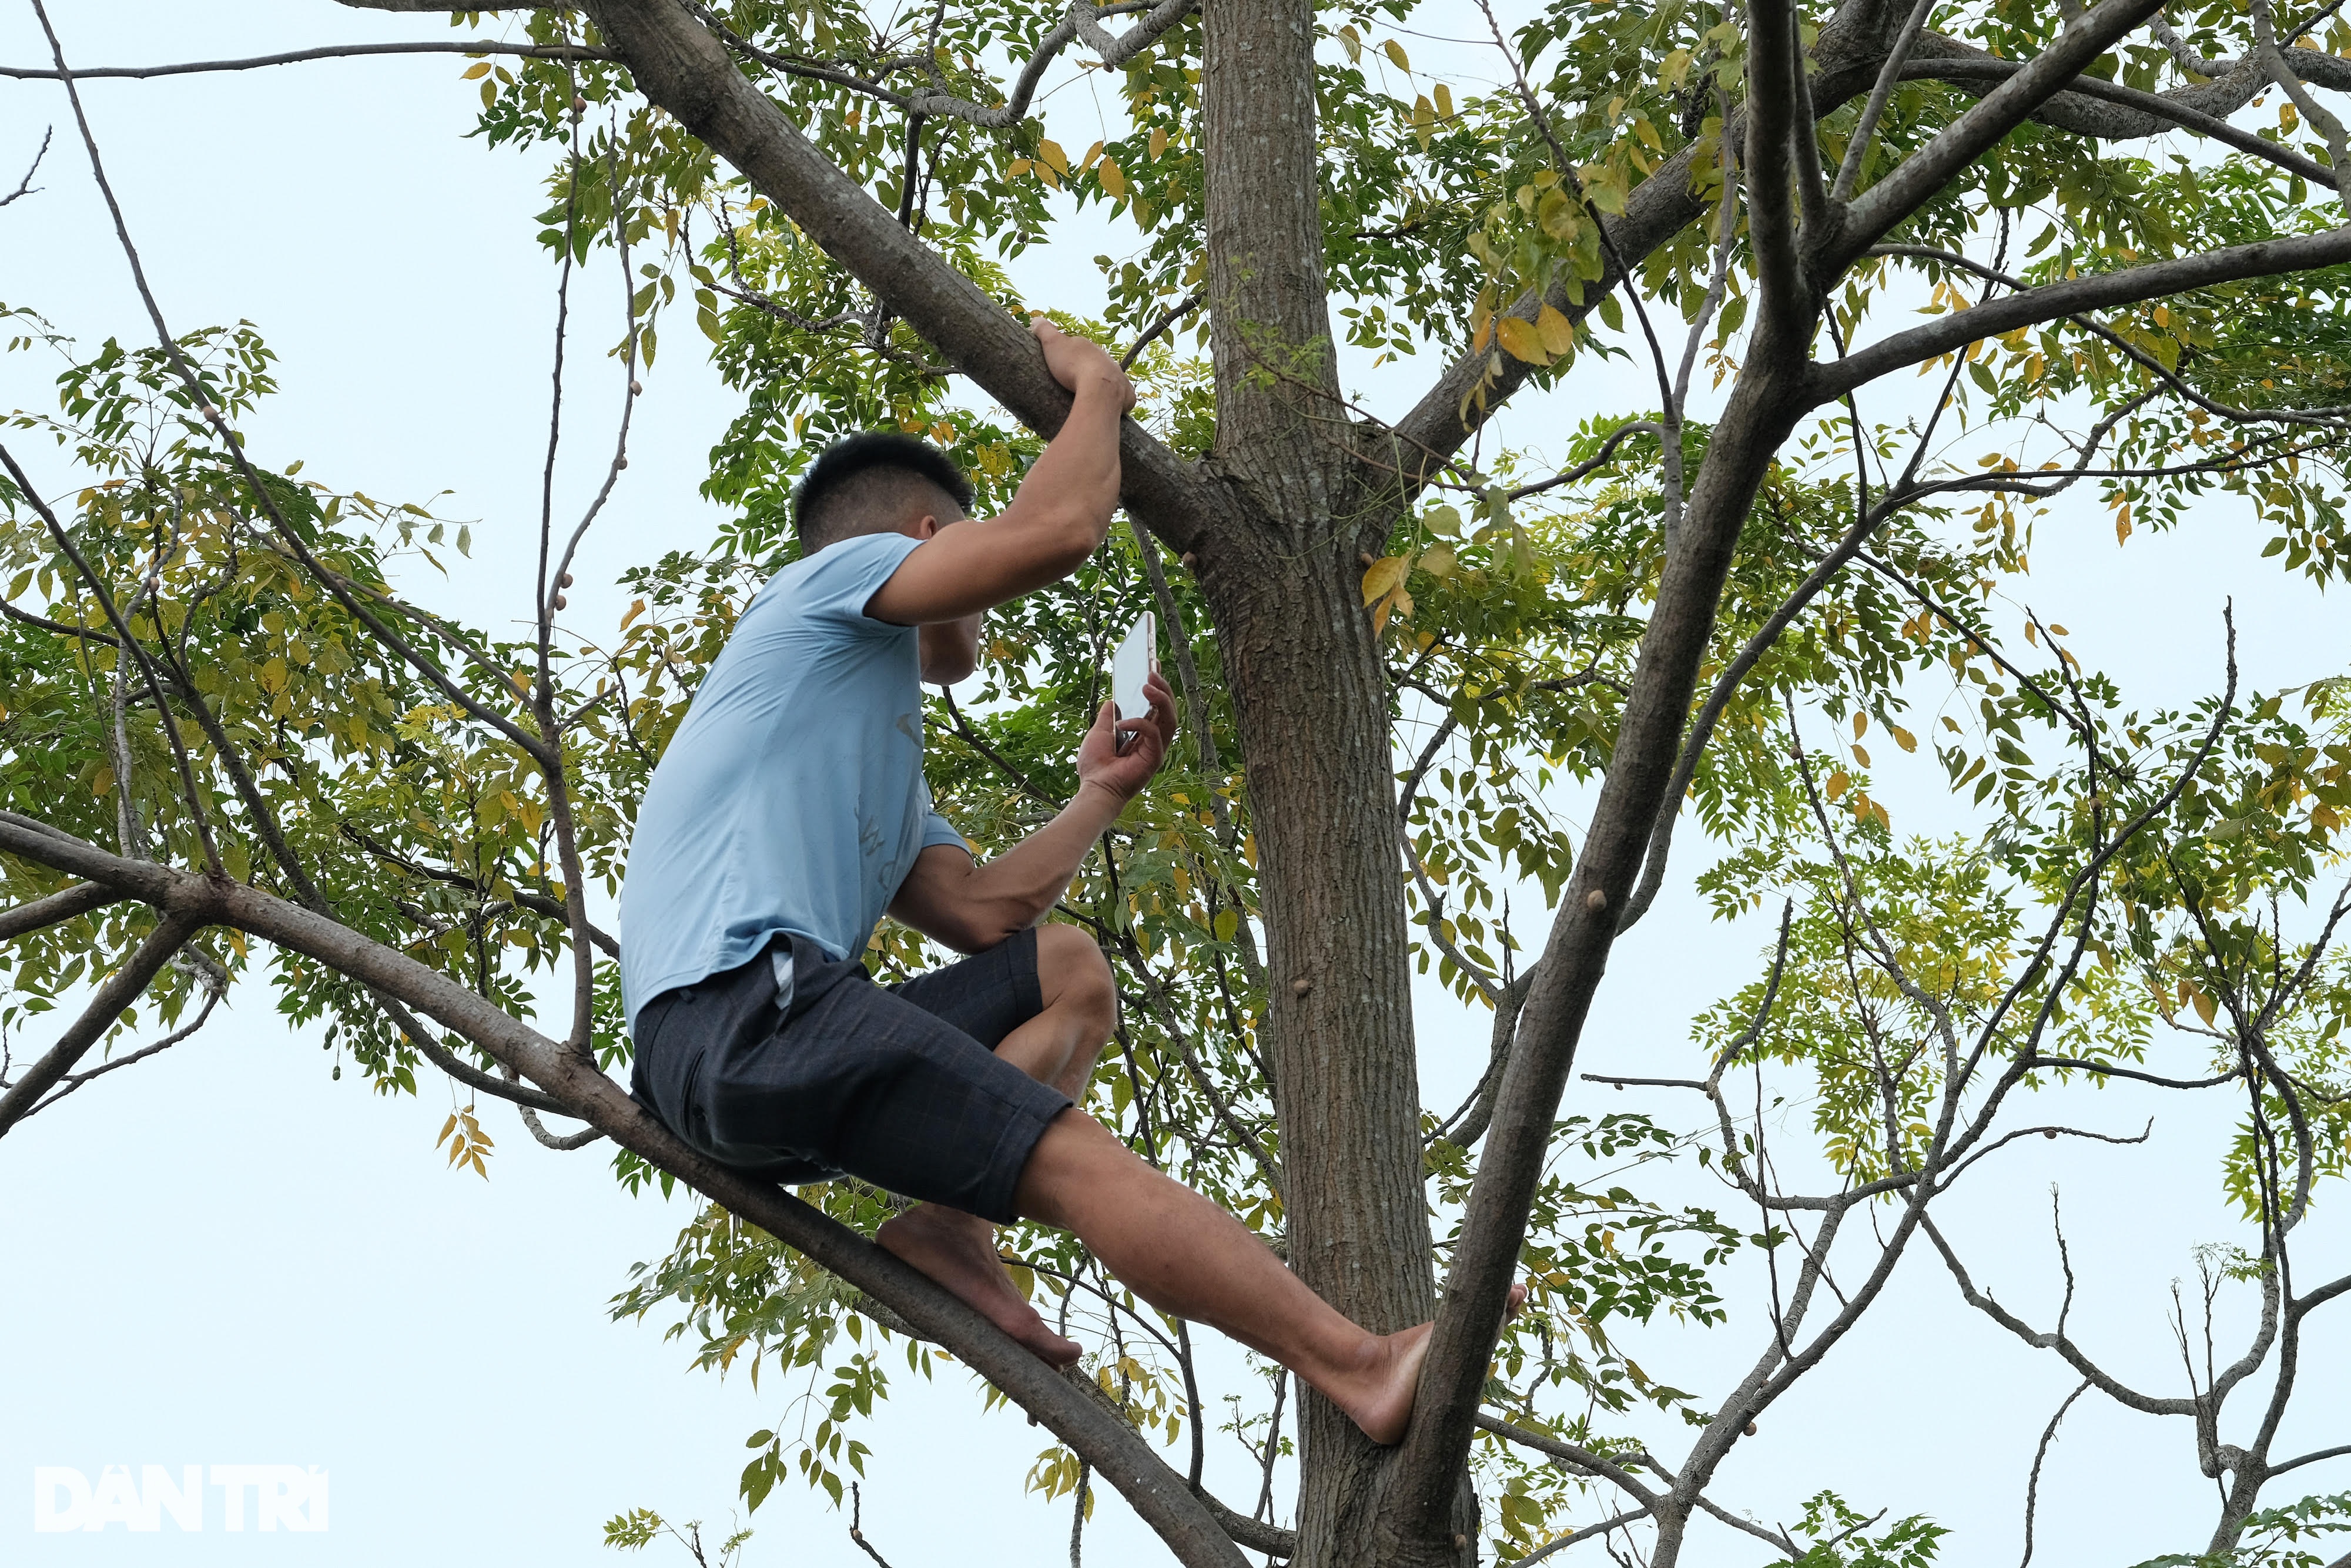 Trèo lên ngọn cây livestream vụ tìm kiếm cô gái mất tích ở Hà Nội - 9